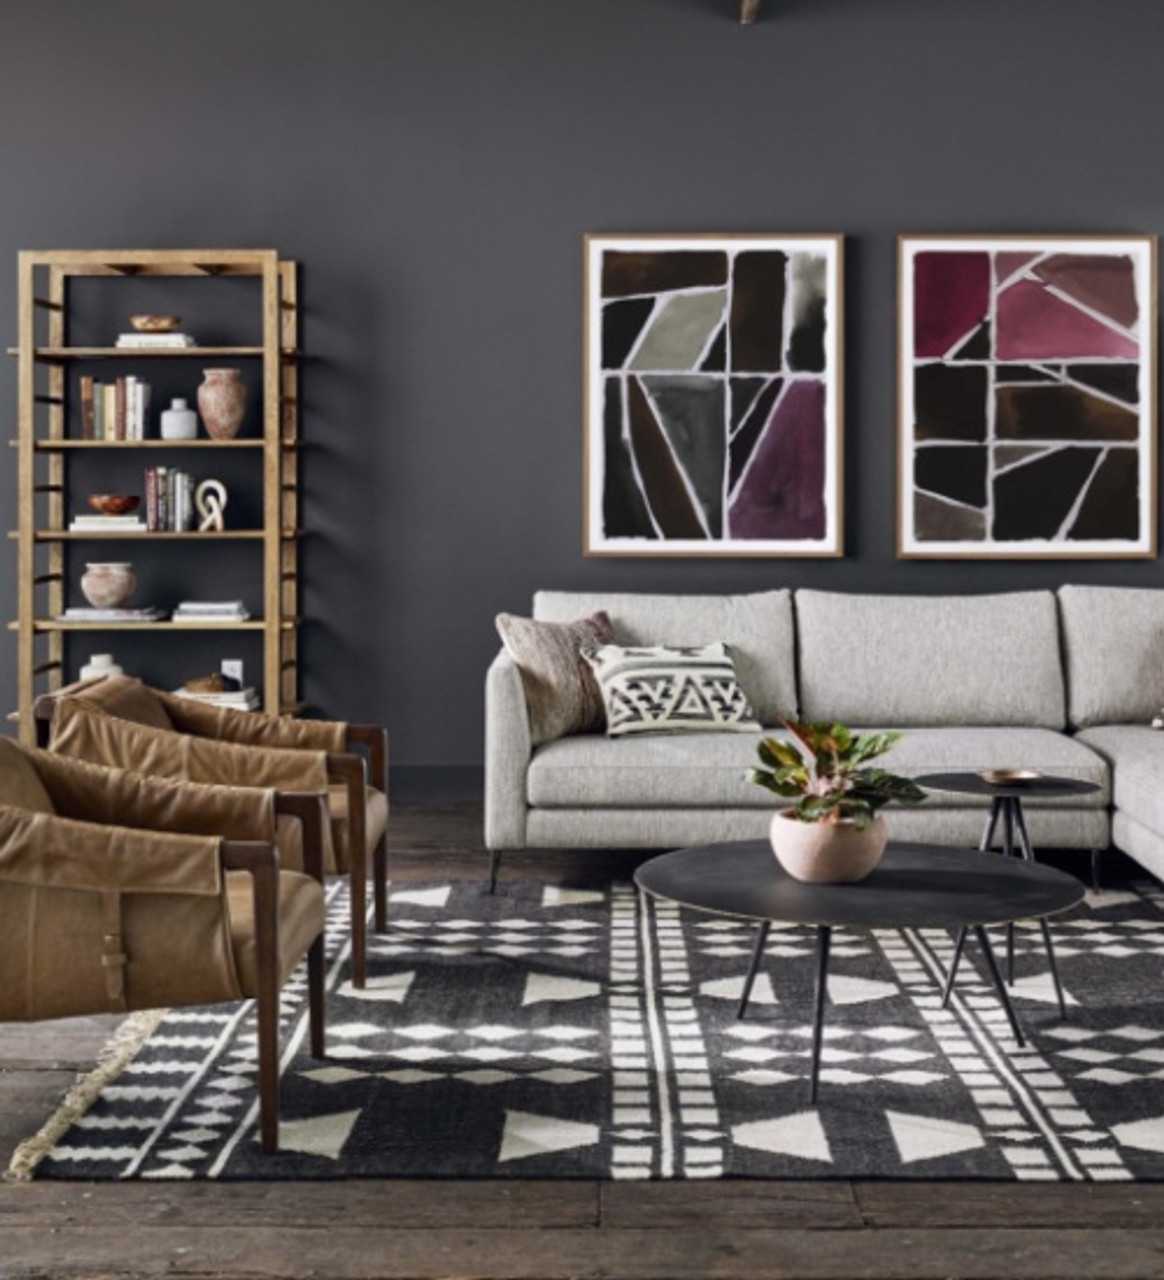 Shop The Look: Artisan Eclectic Loft Living Room - Zin Home